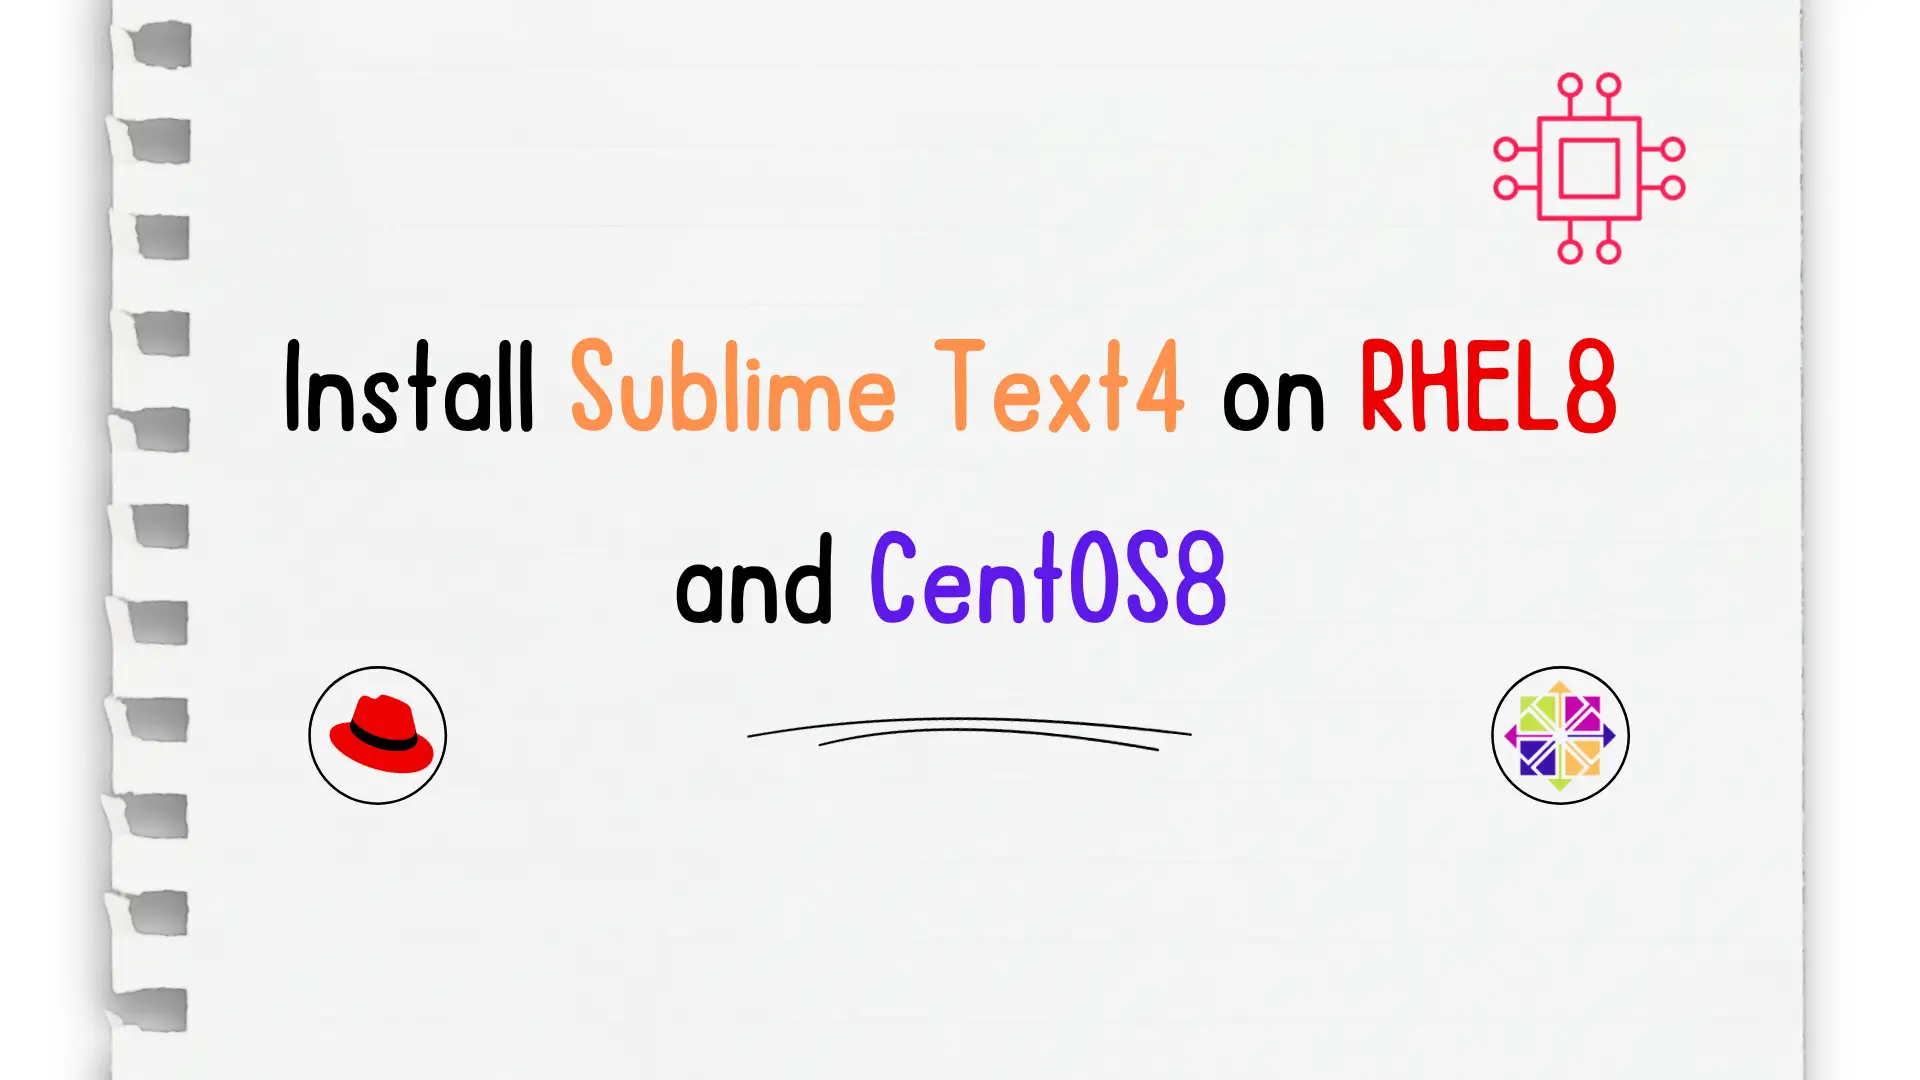 Sublime Text4 on CentOS8 or RHEL8